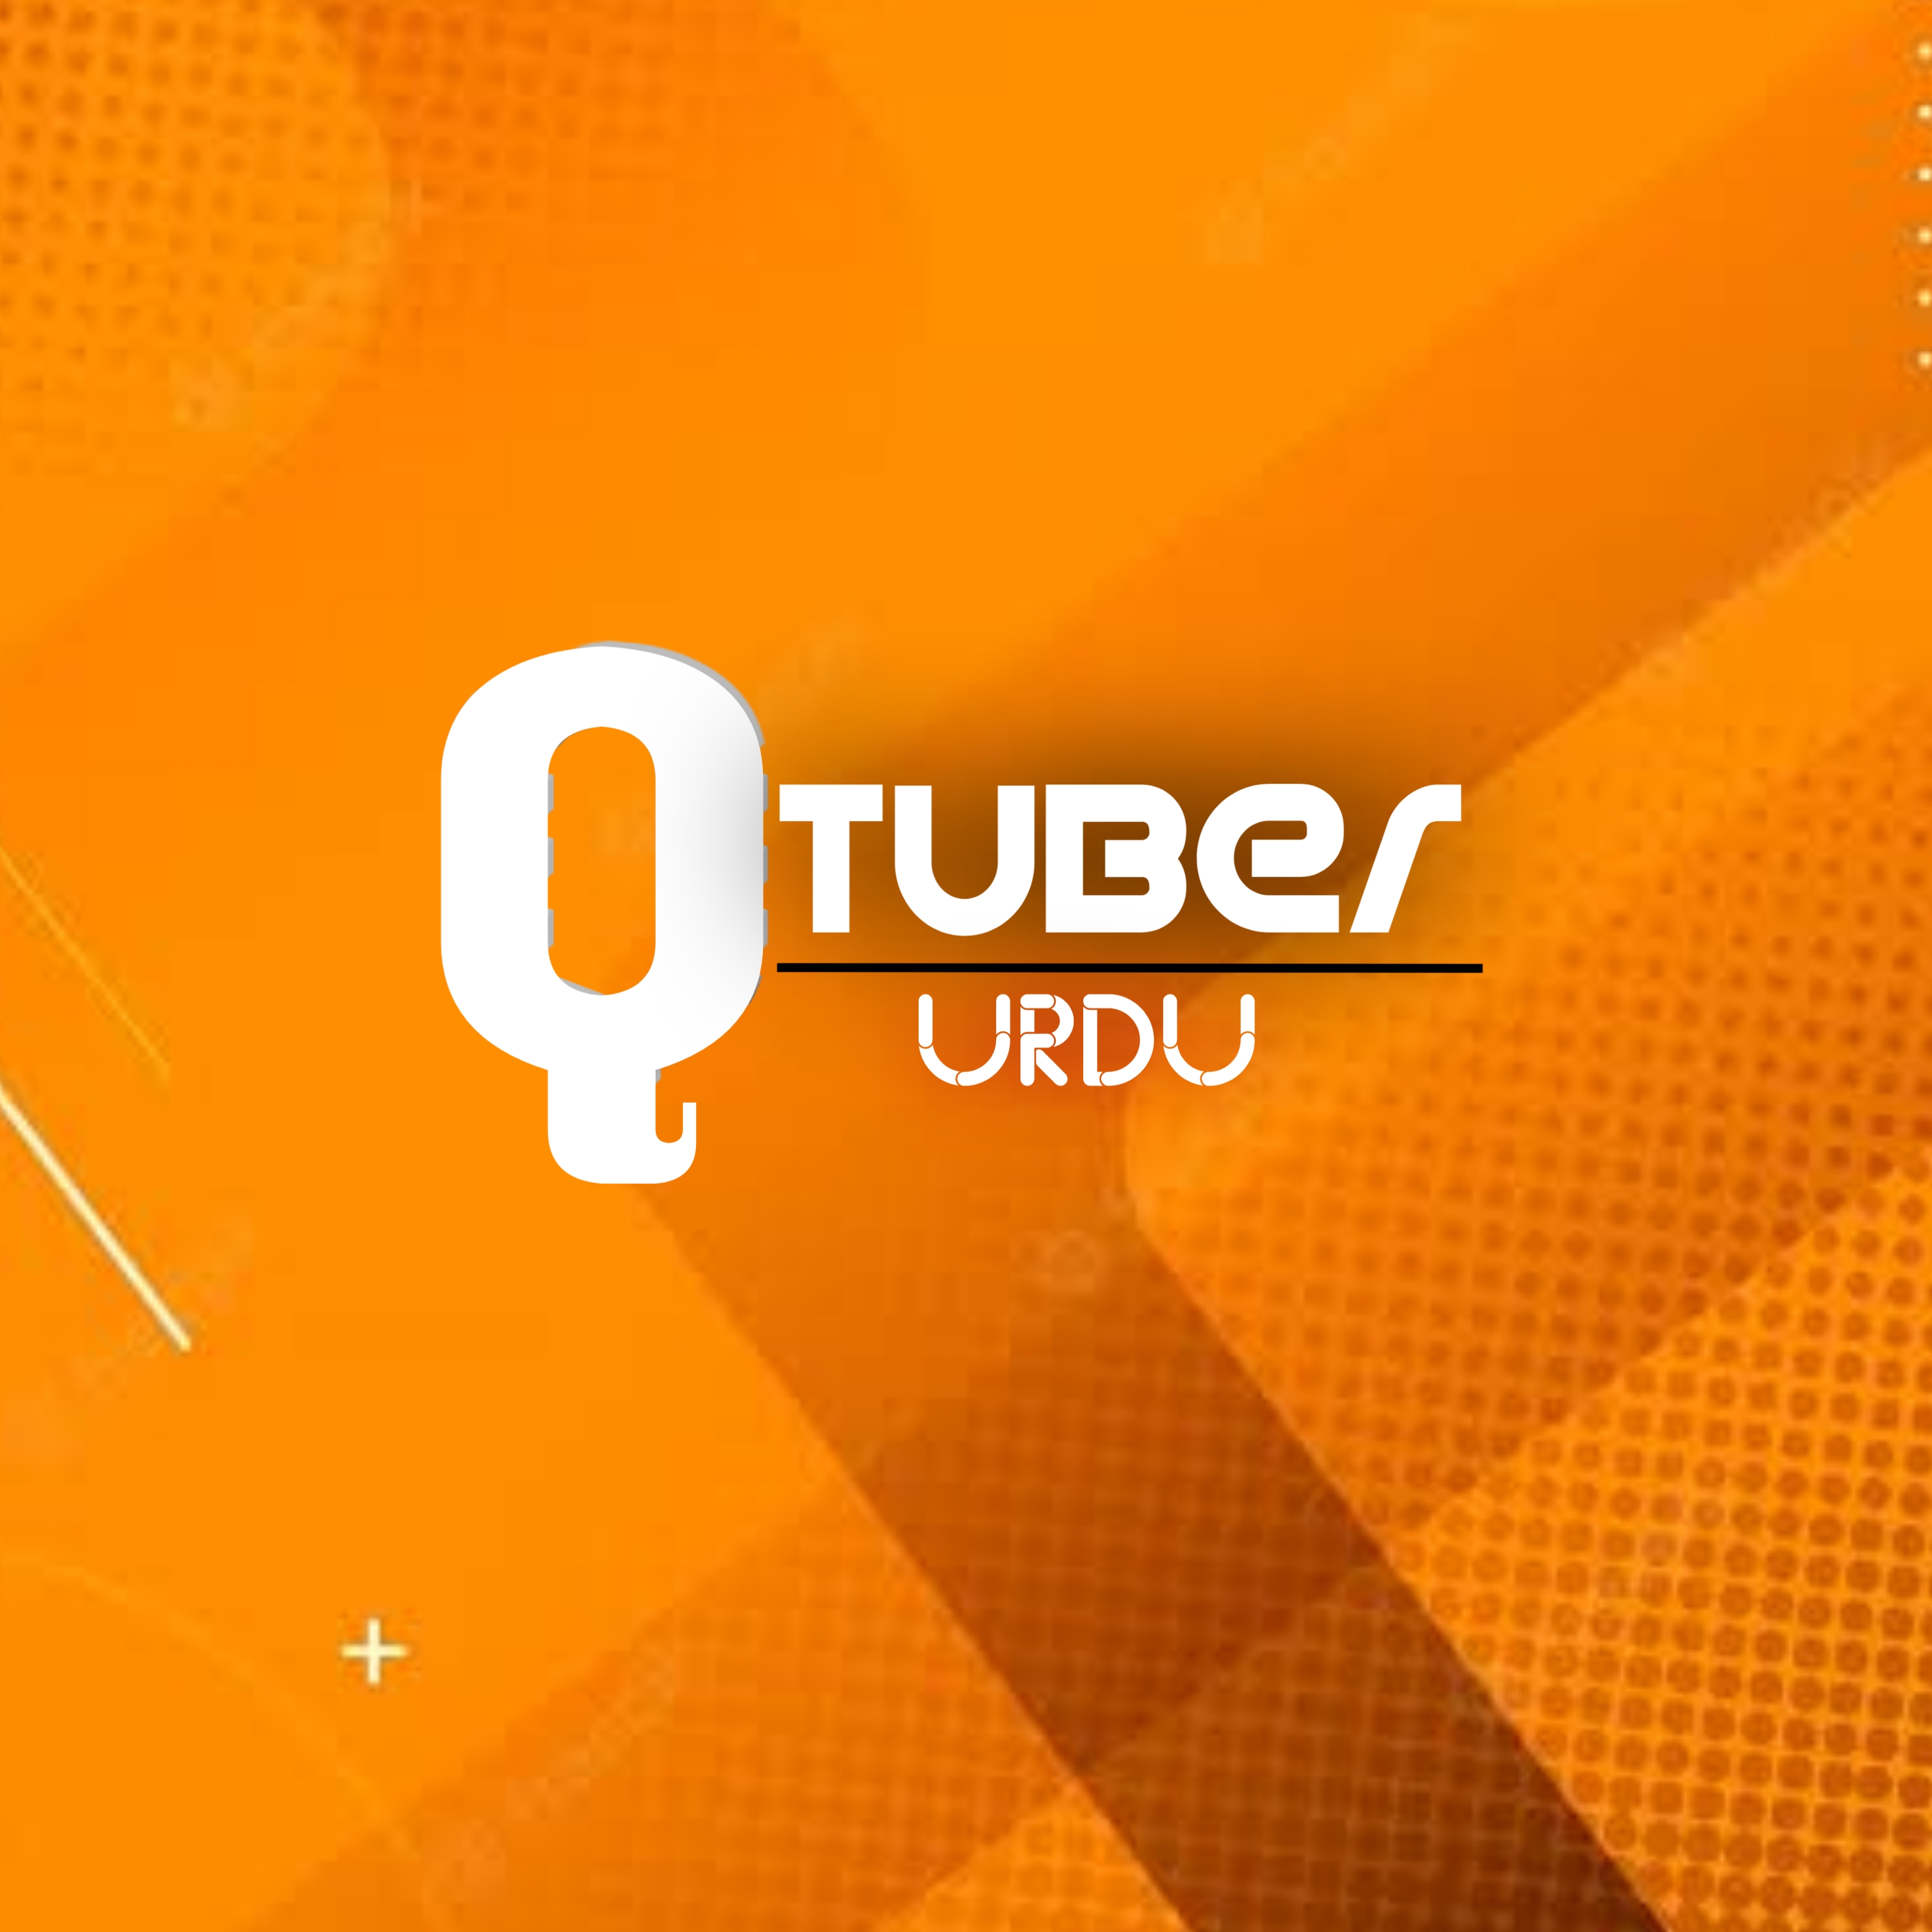 Qtuber Urdu